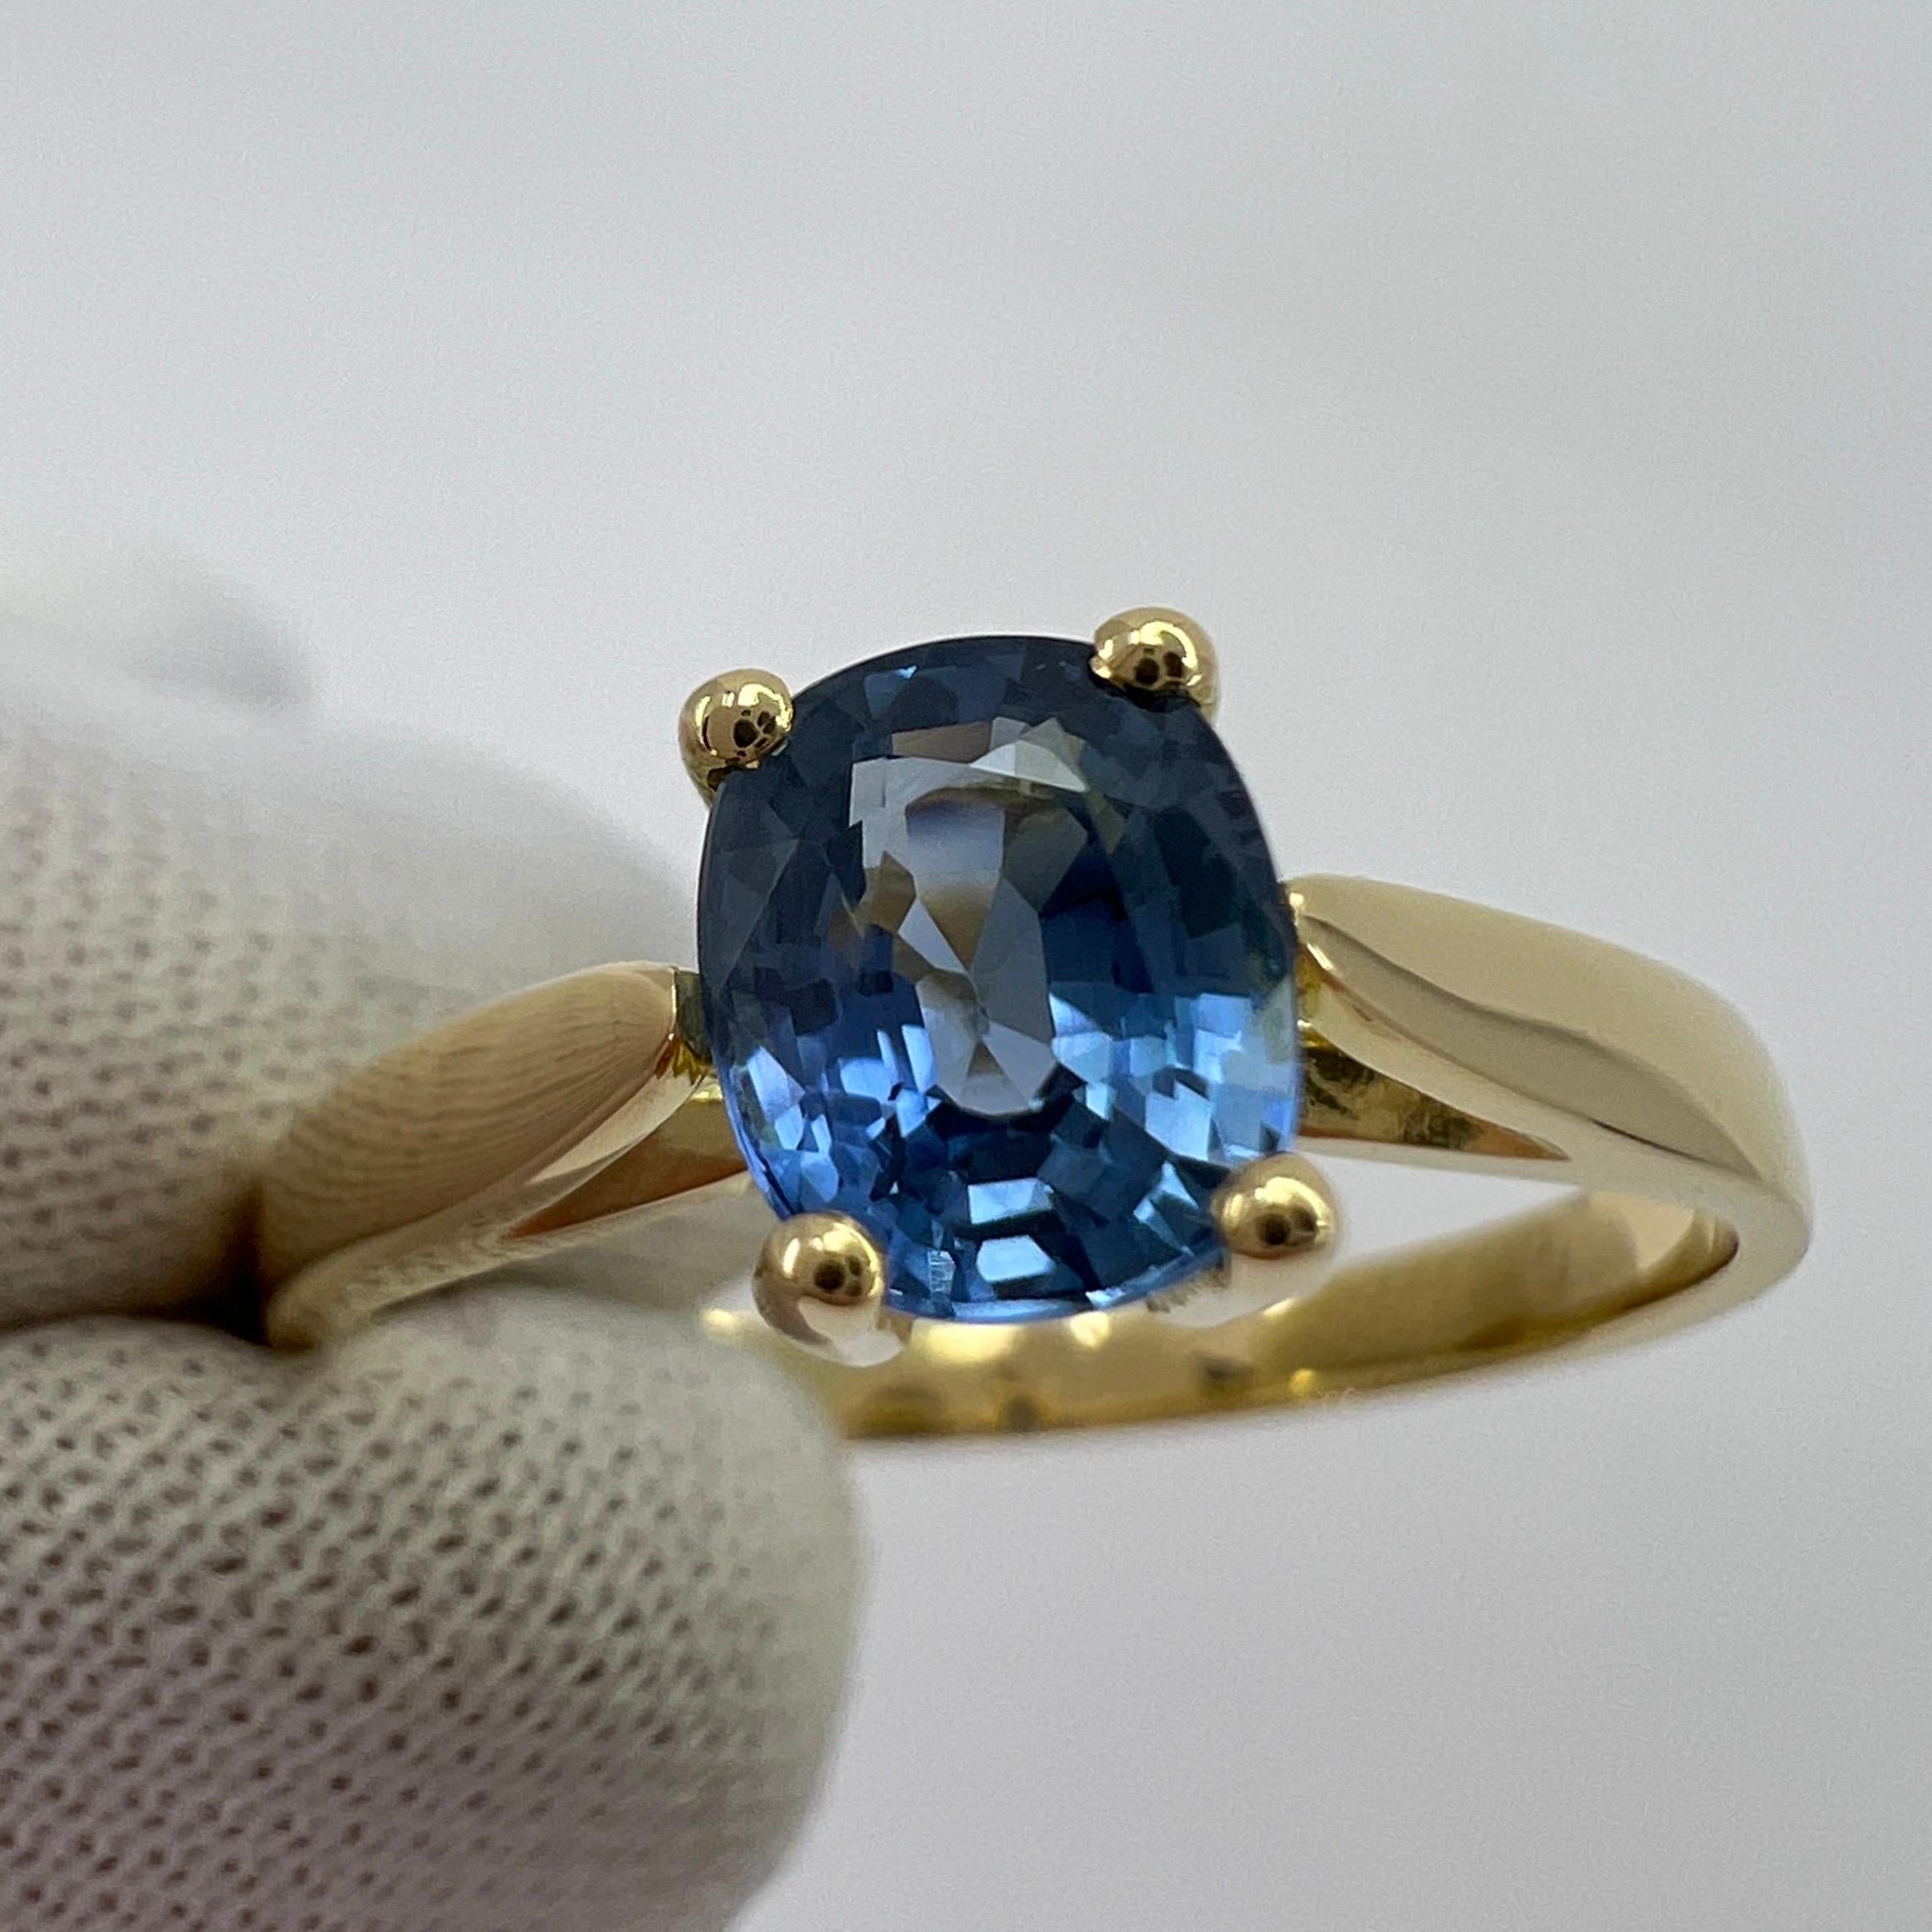 Vivid Cornflower Blue 1.03ct Ceylon Sapphire Cushion Cut 18k Gold Solitaire Ring 2